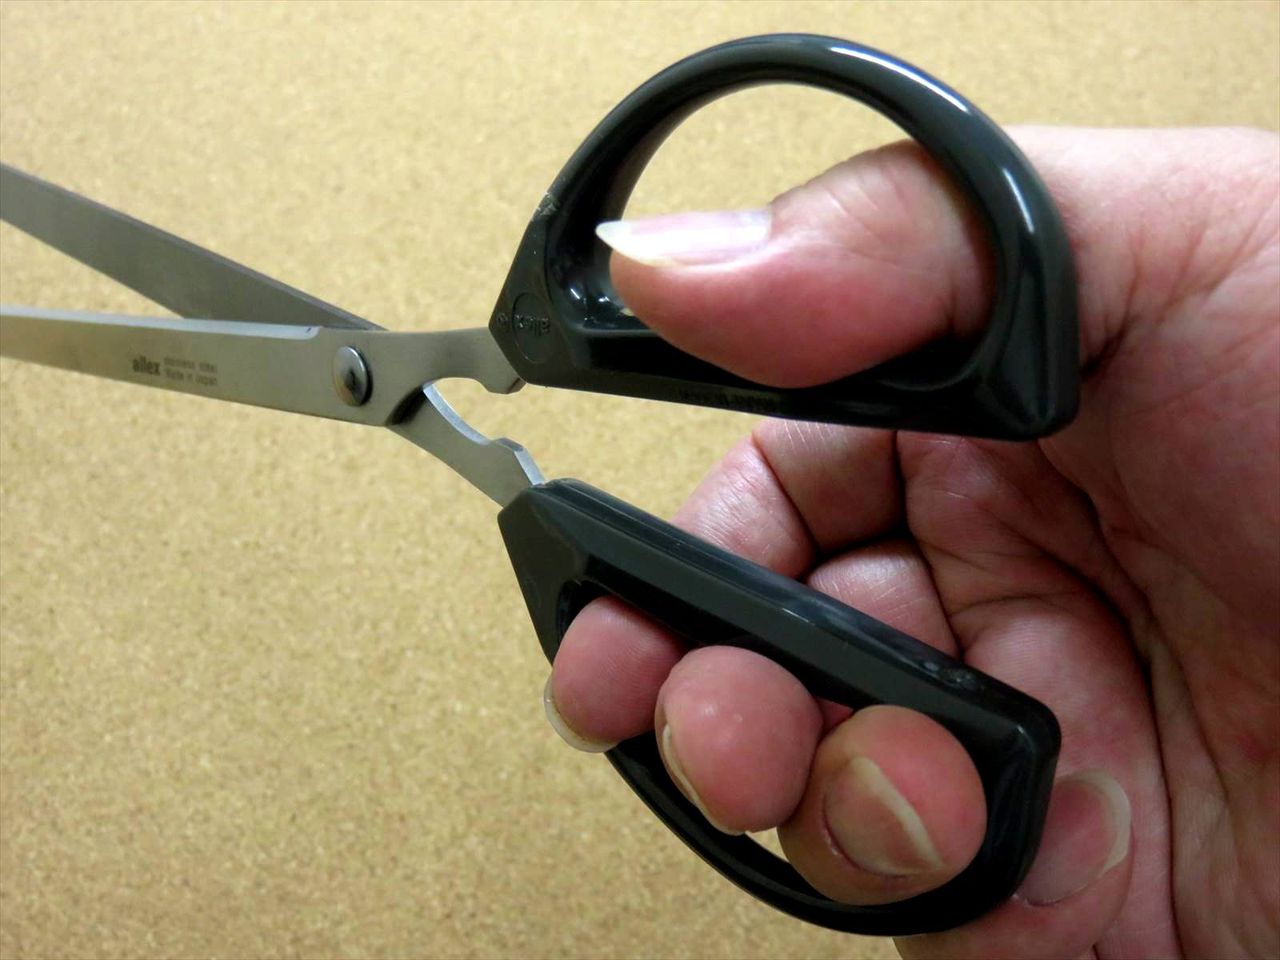 Japanese ALLEX Just Size Scissors Super Long Ideal For A4 Copy Paper Cut JAPAN